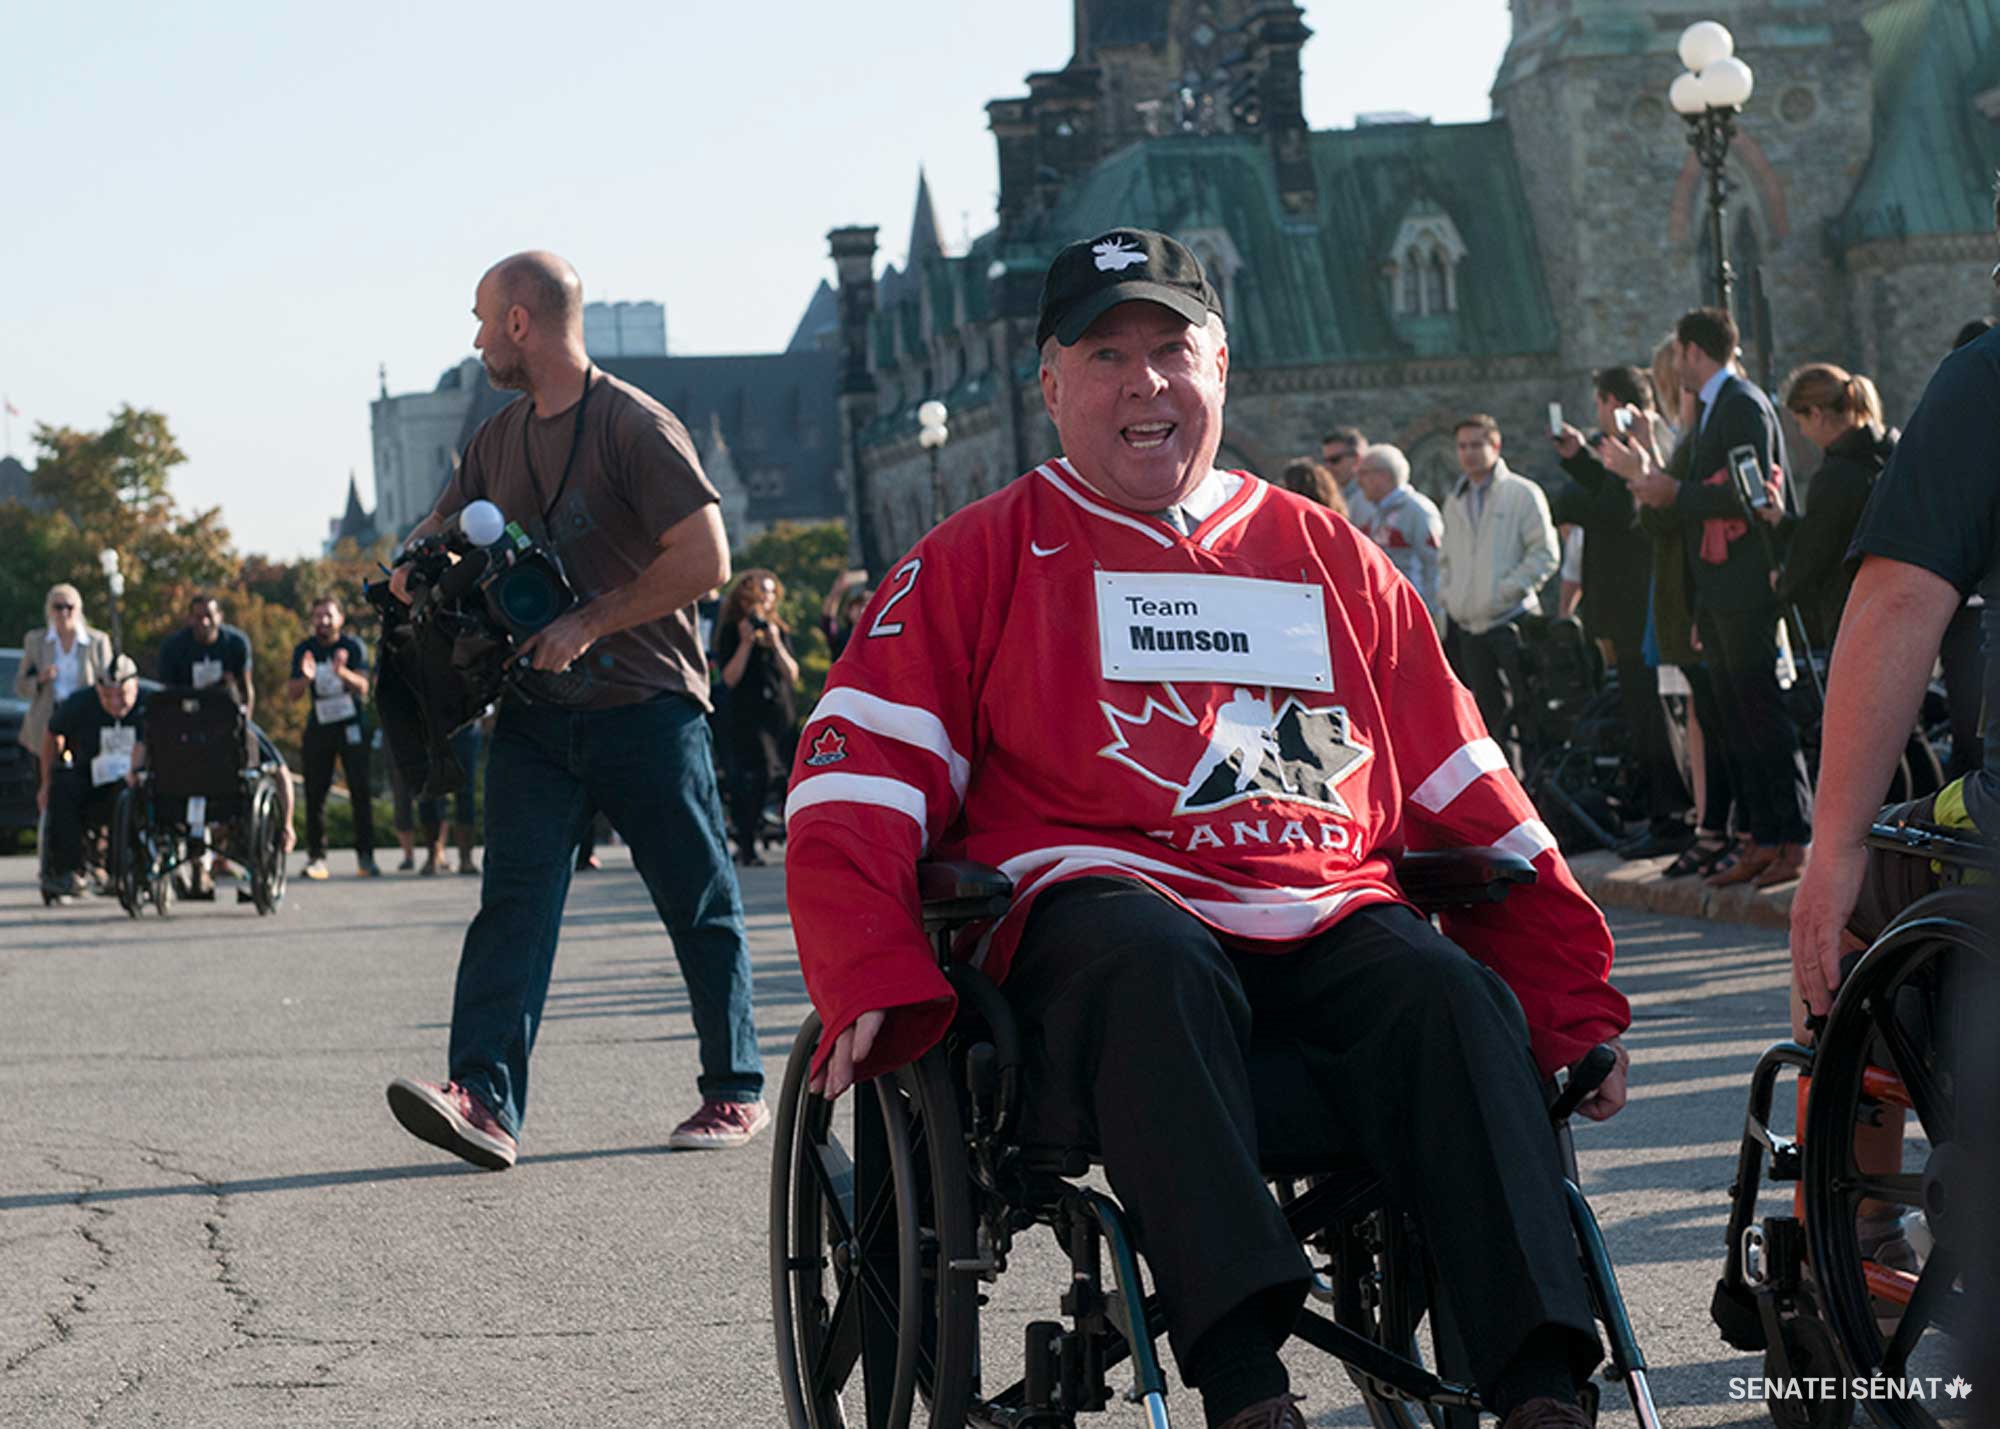 Le sénateur Munson participe à la 6e course annuelle ‘Déferlante roulante’ sur la colline du Parlement en 2017. L’événement célèbre les réalisations d’athlètes d’élite en fauteuil roulant et vise à sensibiliser les gens aux défis surmontés par les personnes handicapées.